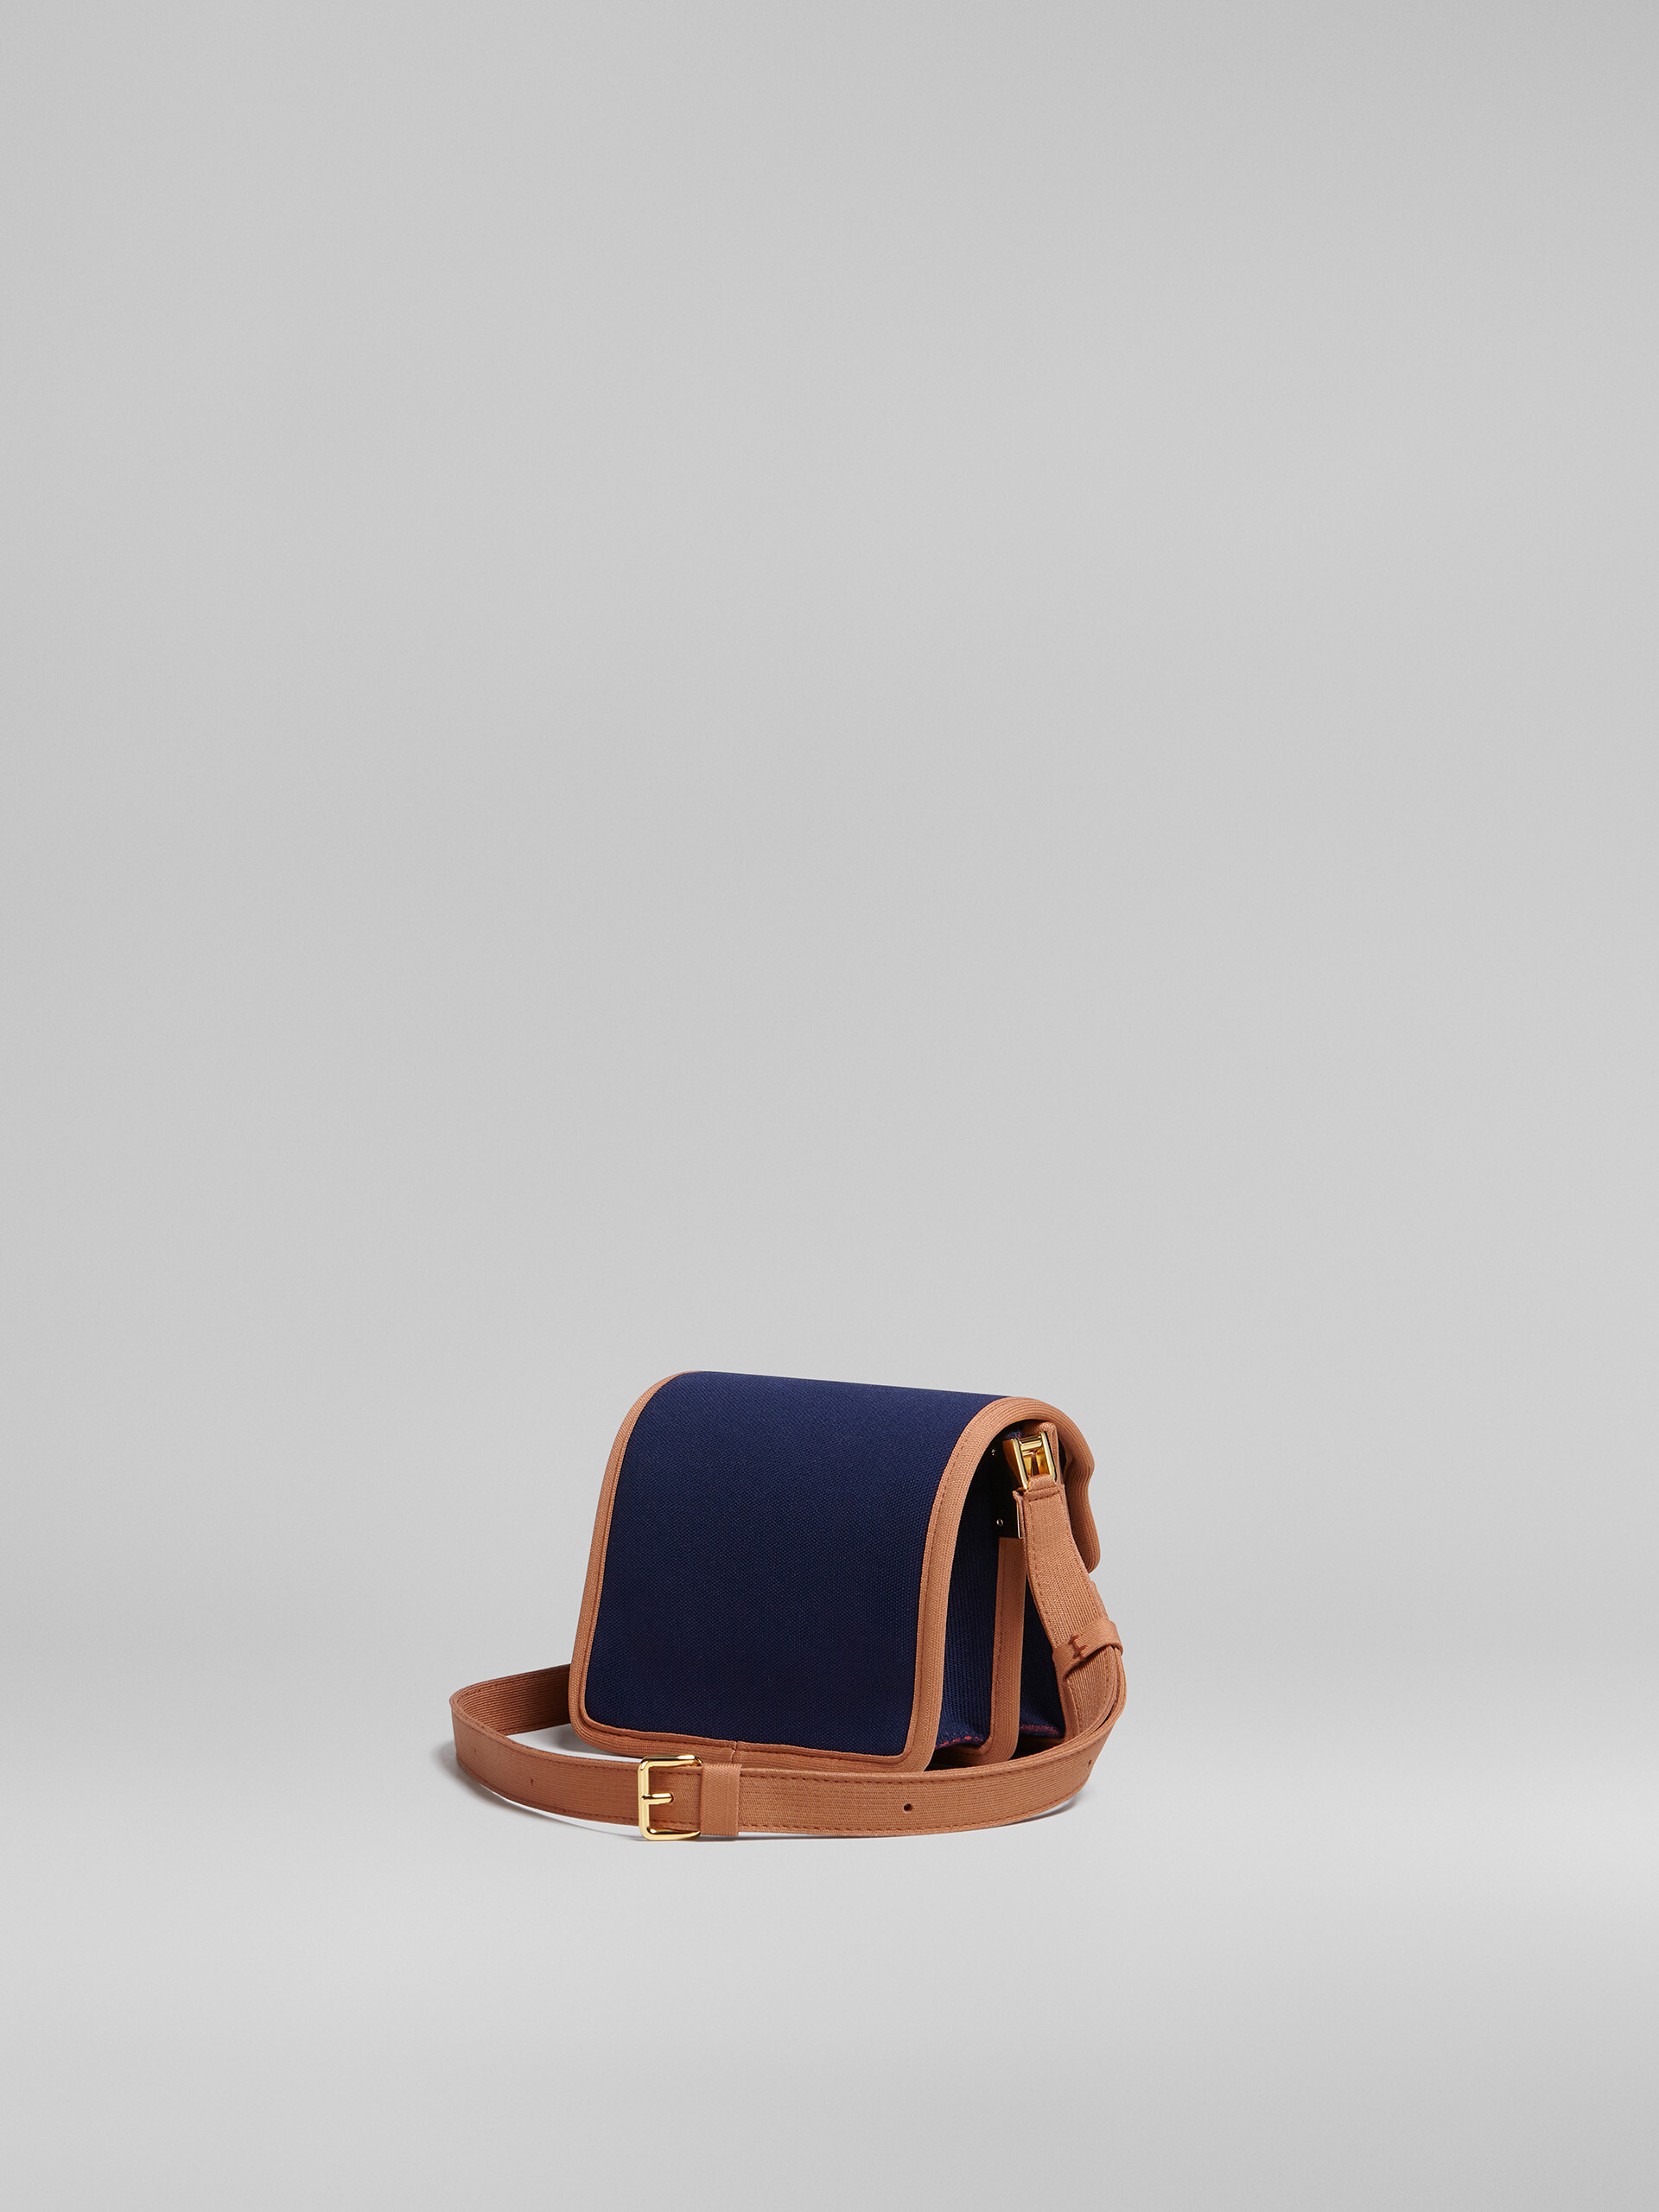 TRUNK SOFT bag mini in jacquard blu e marrone - Borse a spalla - Image 3